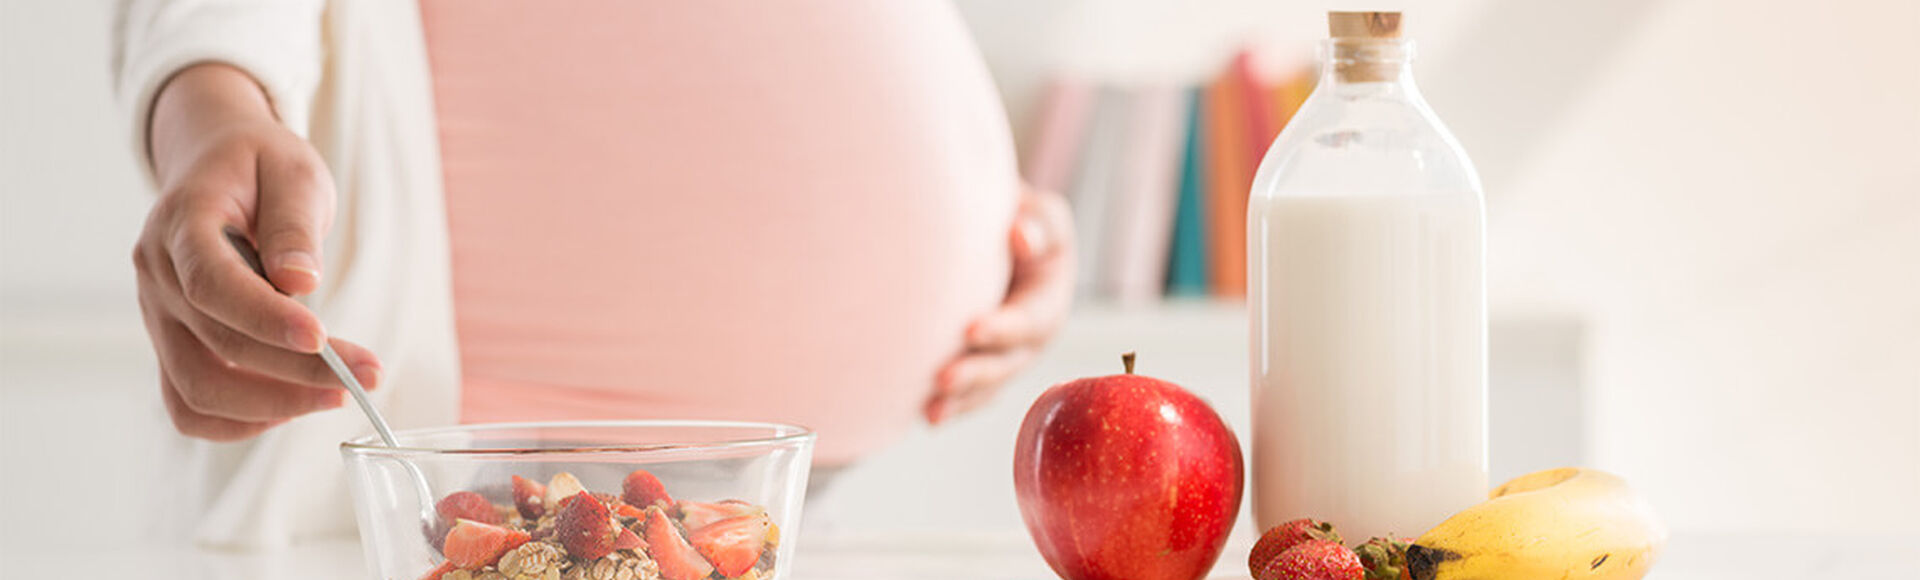 Alimentos recomendados para embarazadas | by Huggies Argentina